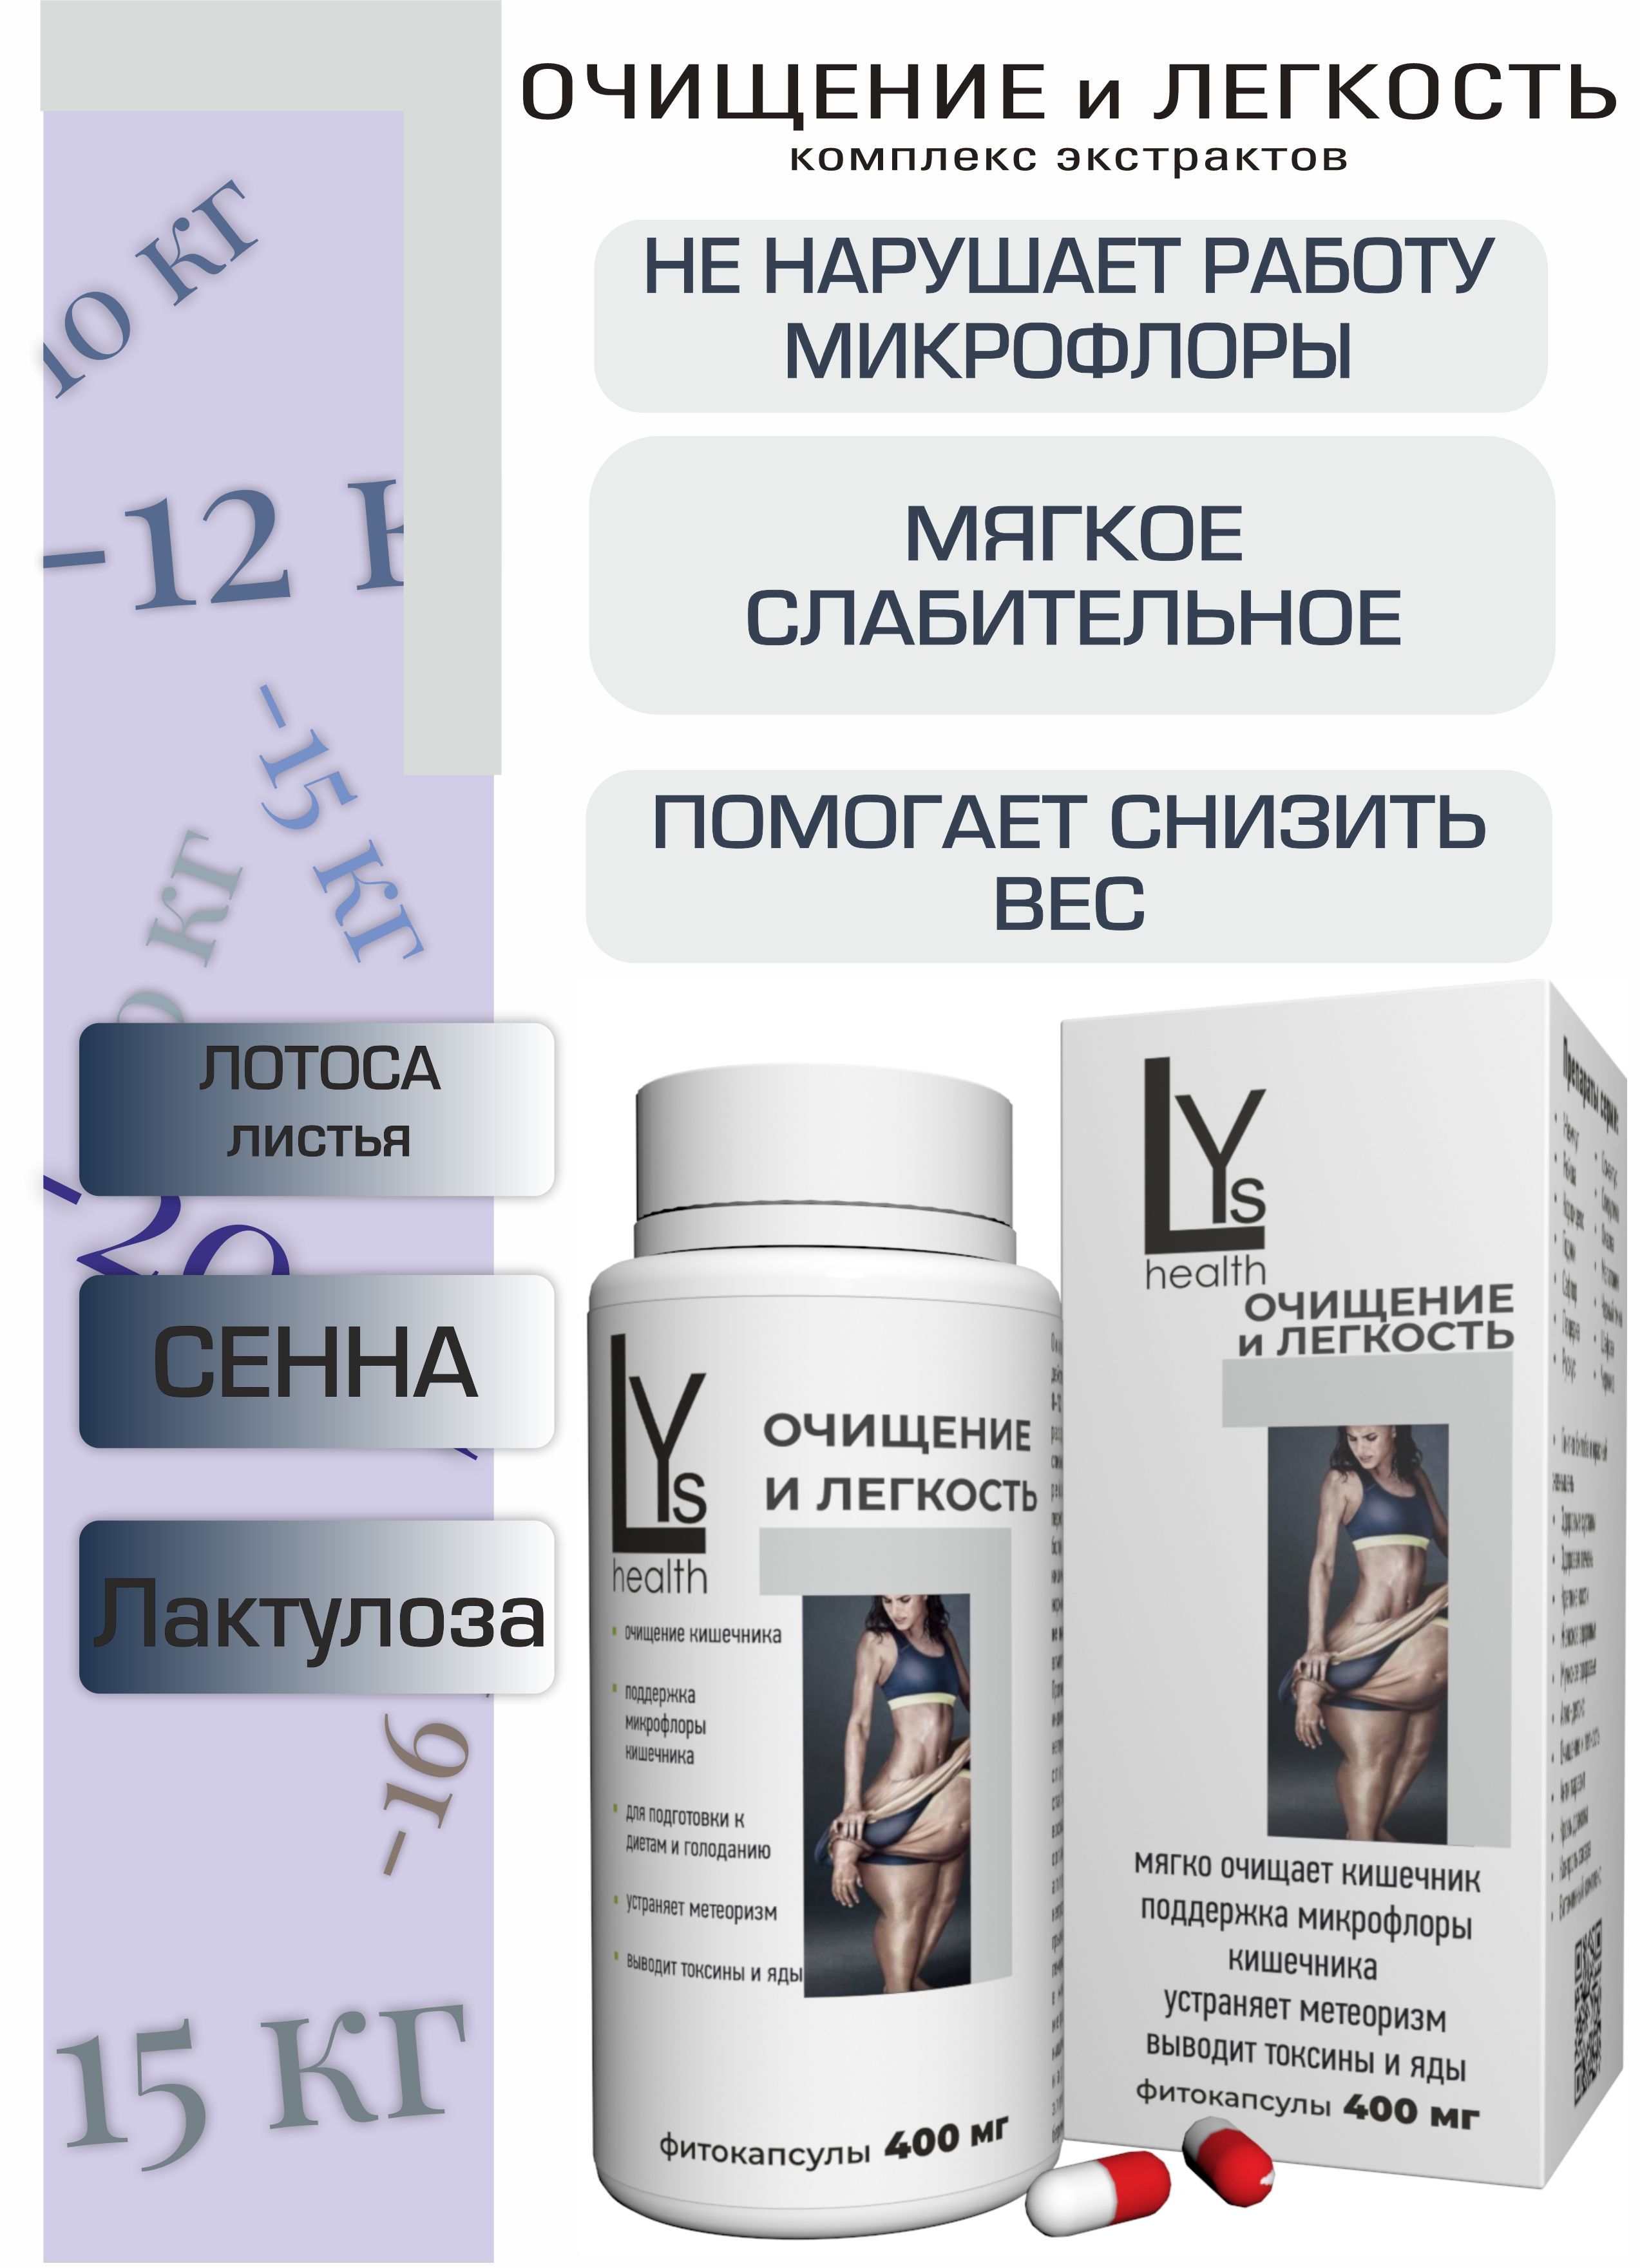 Очищение И легкость, комплекс высококонцентрированных экстрактов 90 капсул (LYs Cosmetics & Health)